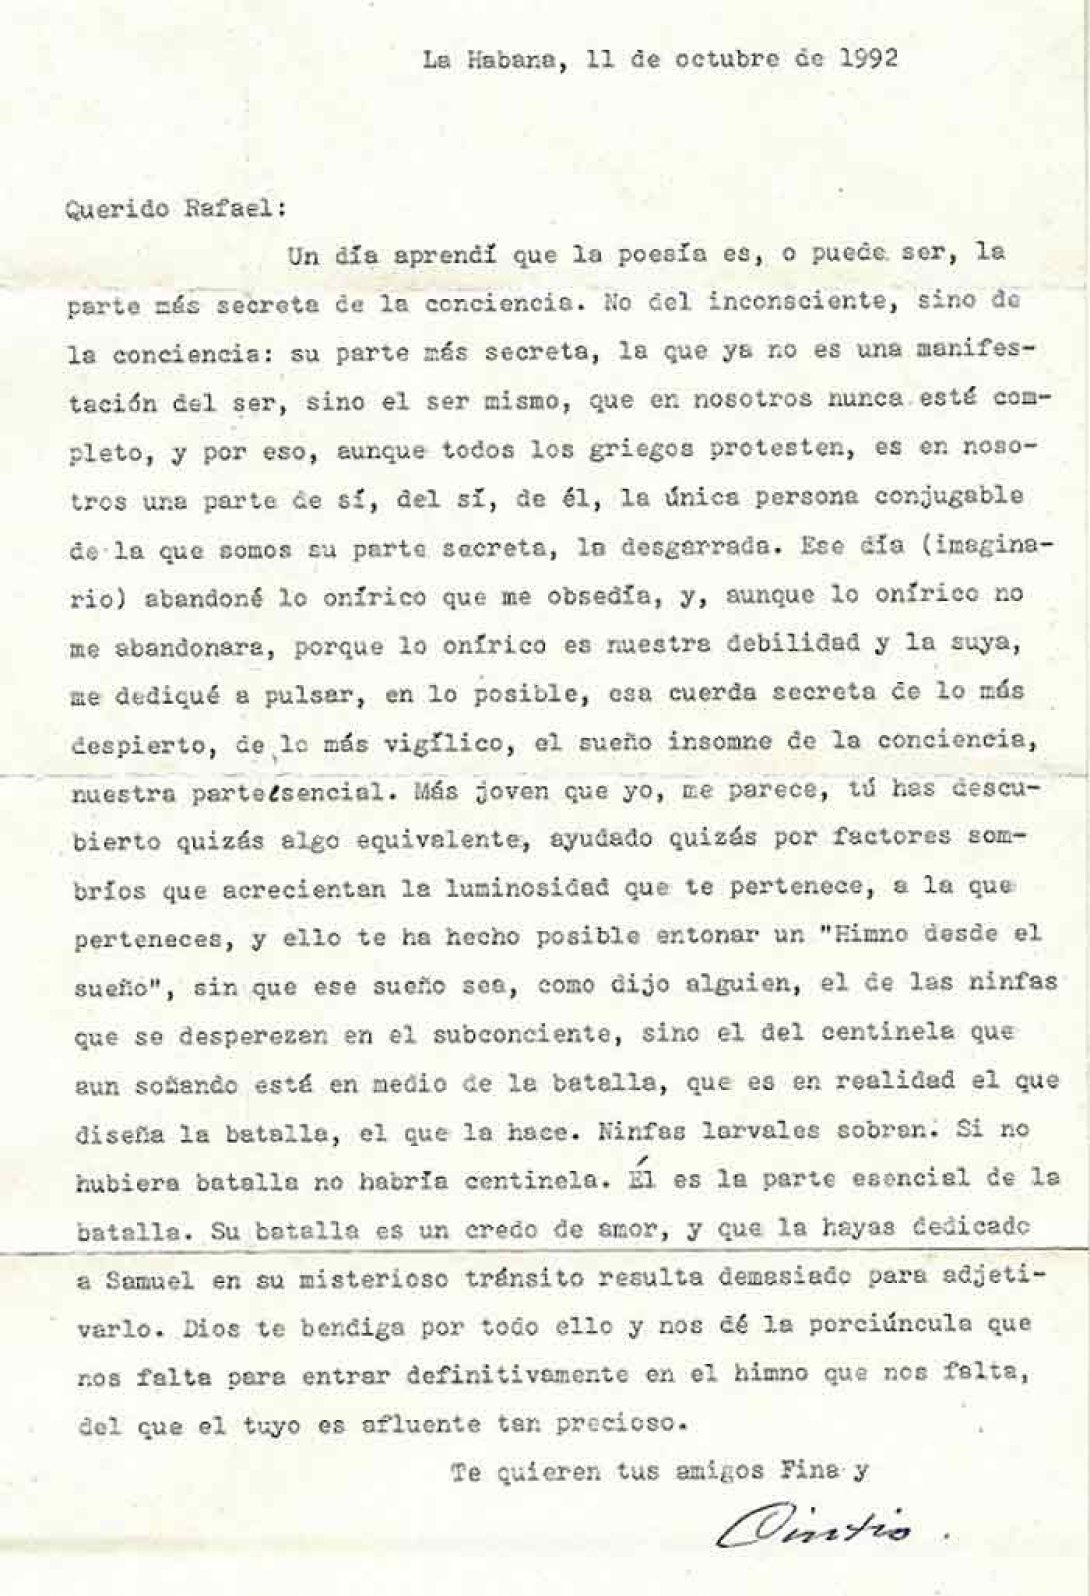 Mecanuscrito, carta de Fina y Cintio, en los archivos de Rafael Almanza